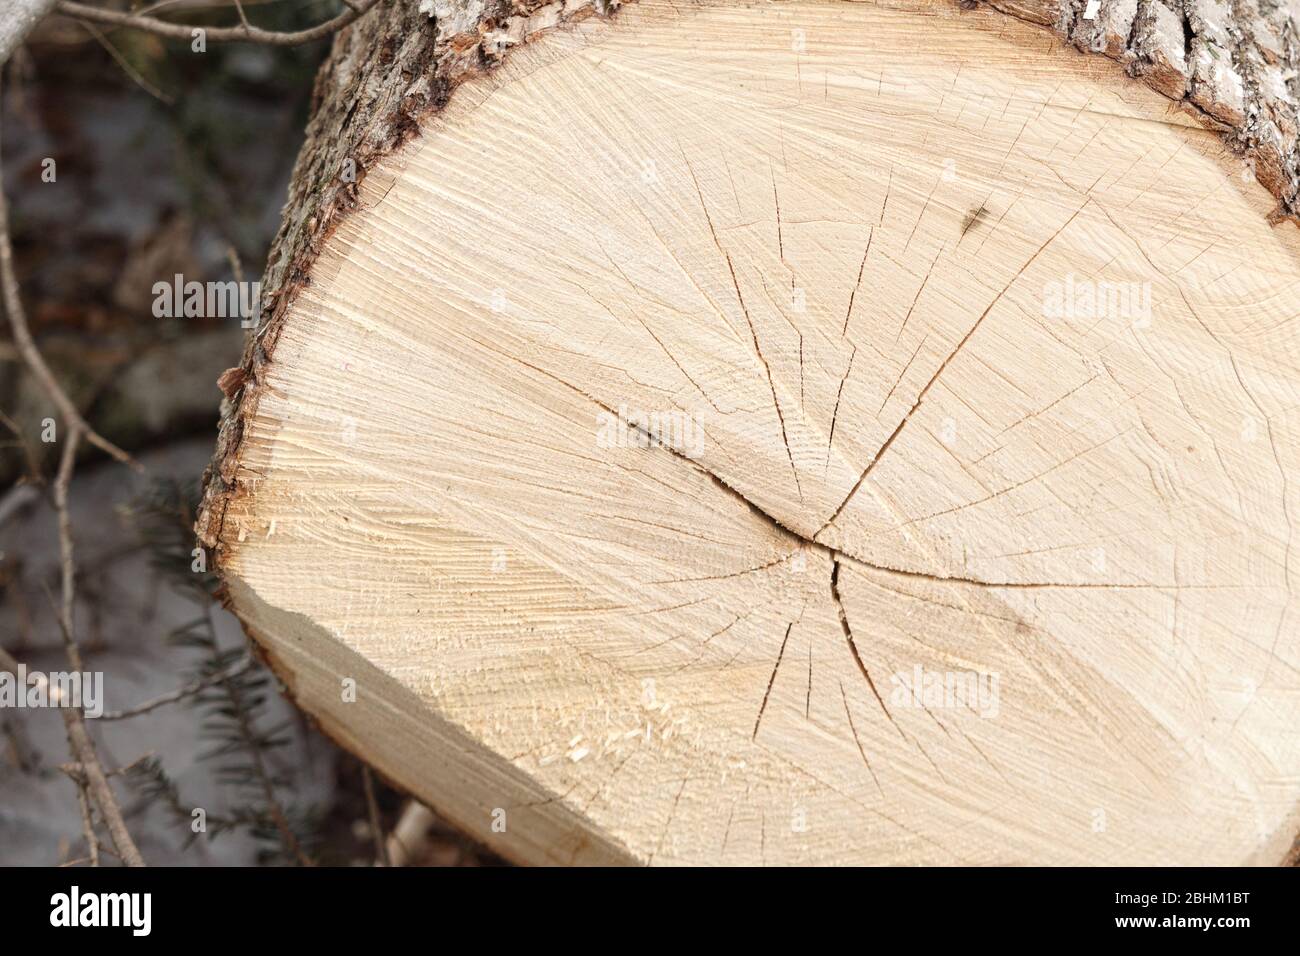 Un tronco di legno è stato segato aperto, mostrando una sezione trasversale del suo legno leggermente colorato all'interno. Foto Stock